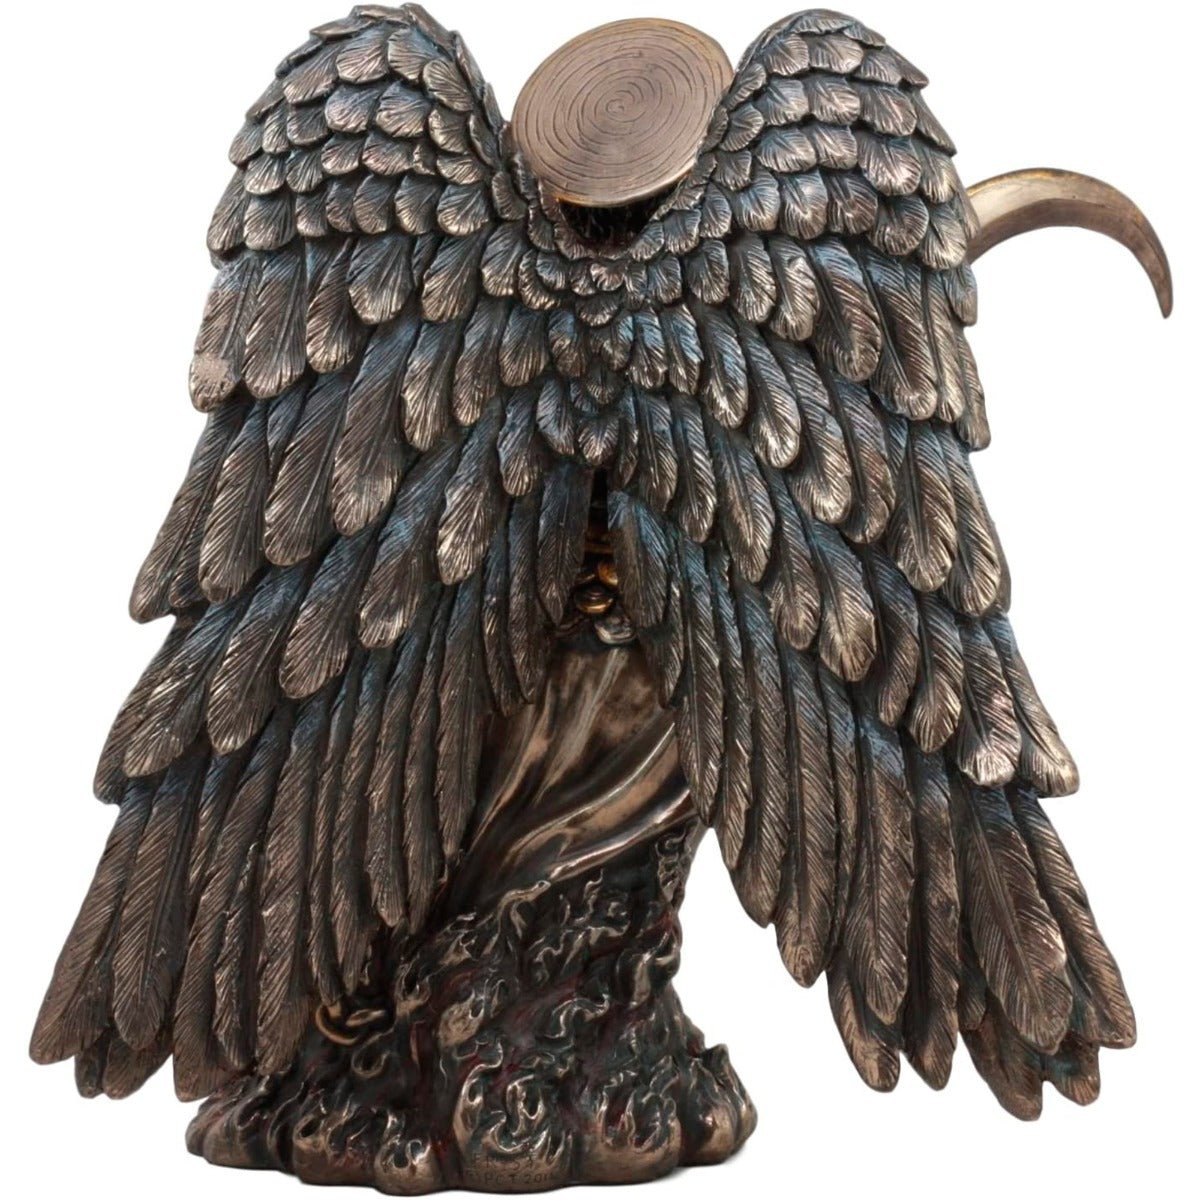 Archangel Gabriel Sculpture Large A-022S · Museumize · Online